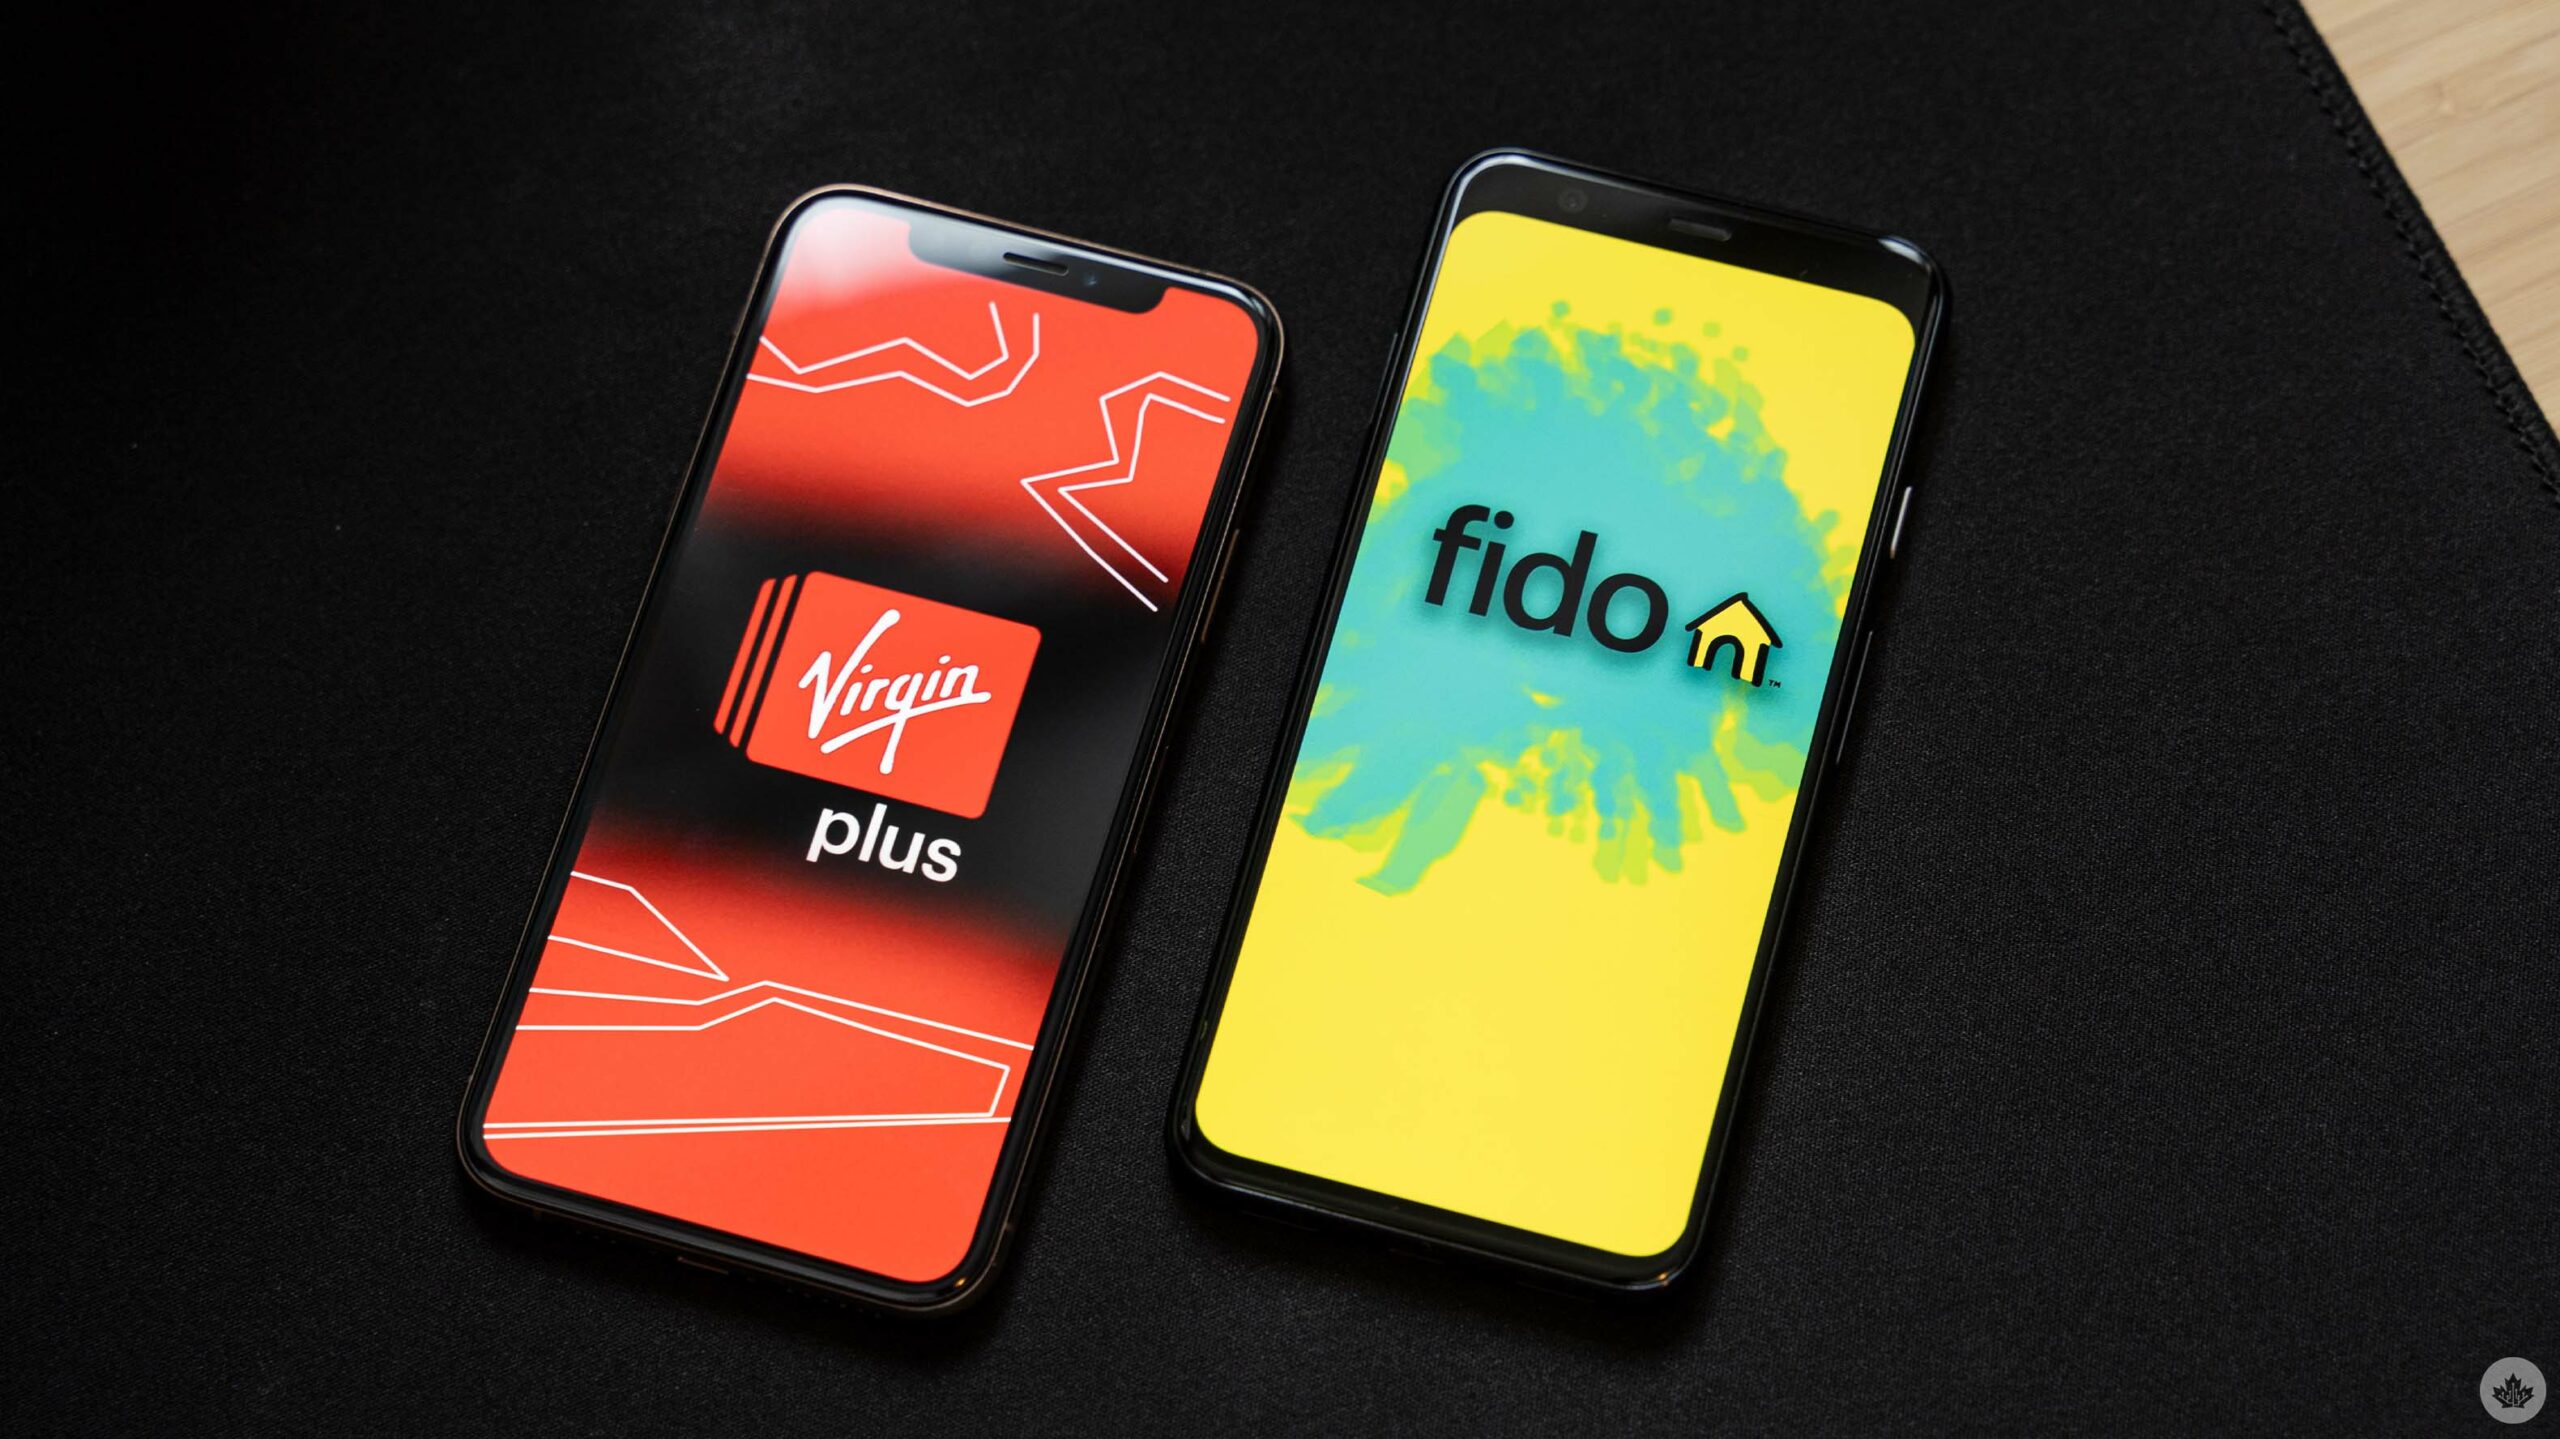 Virgin Plus and Fido logos